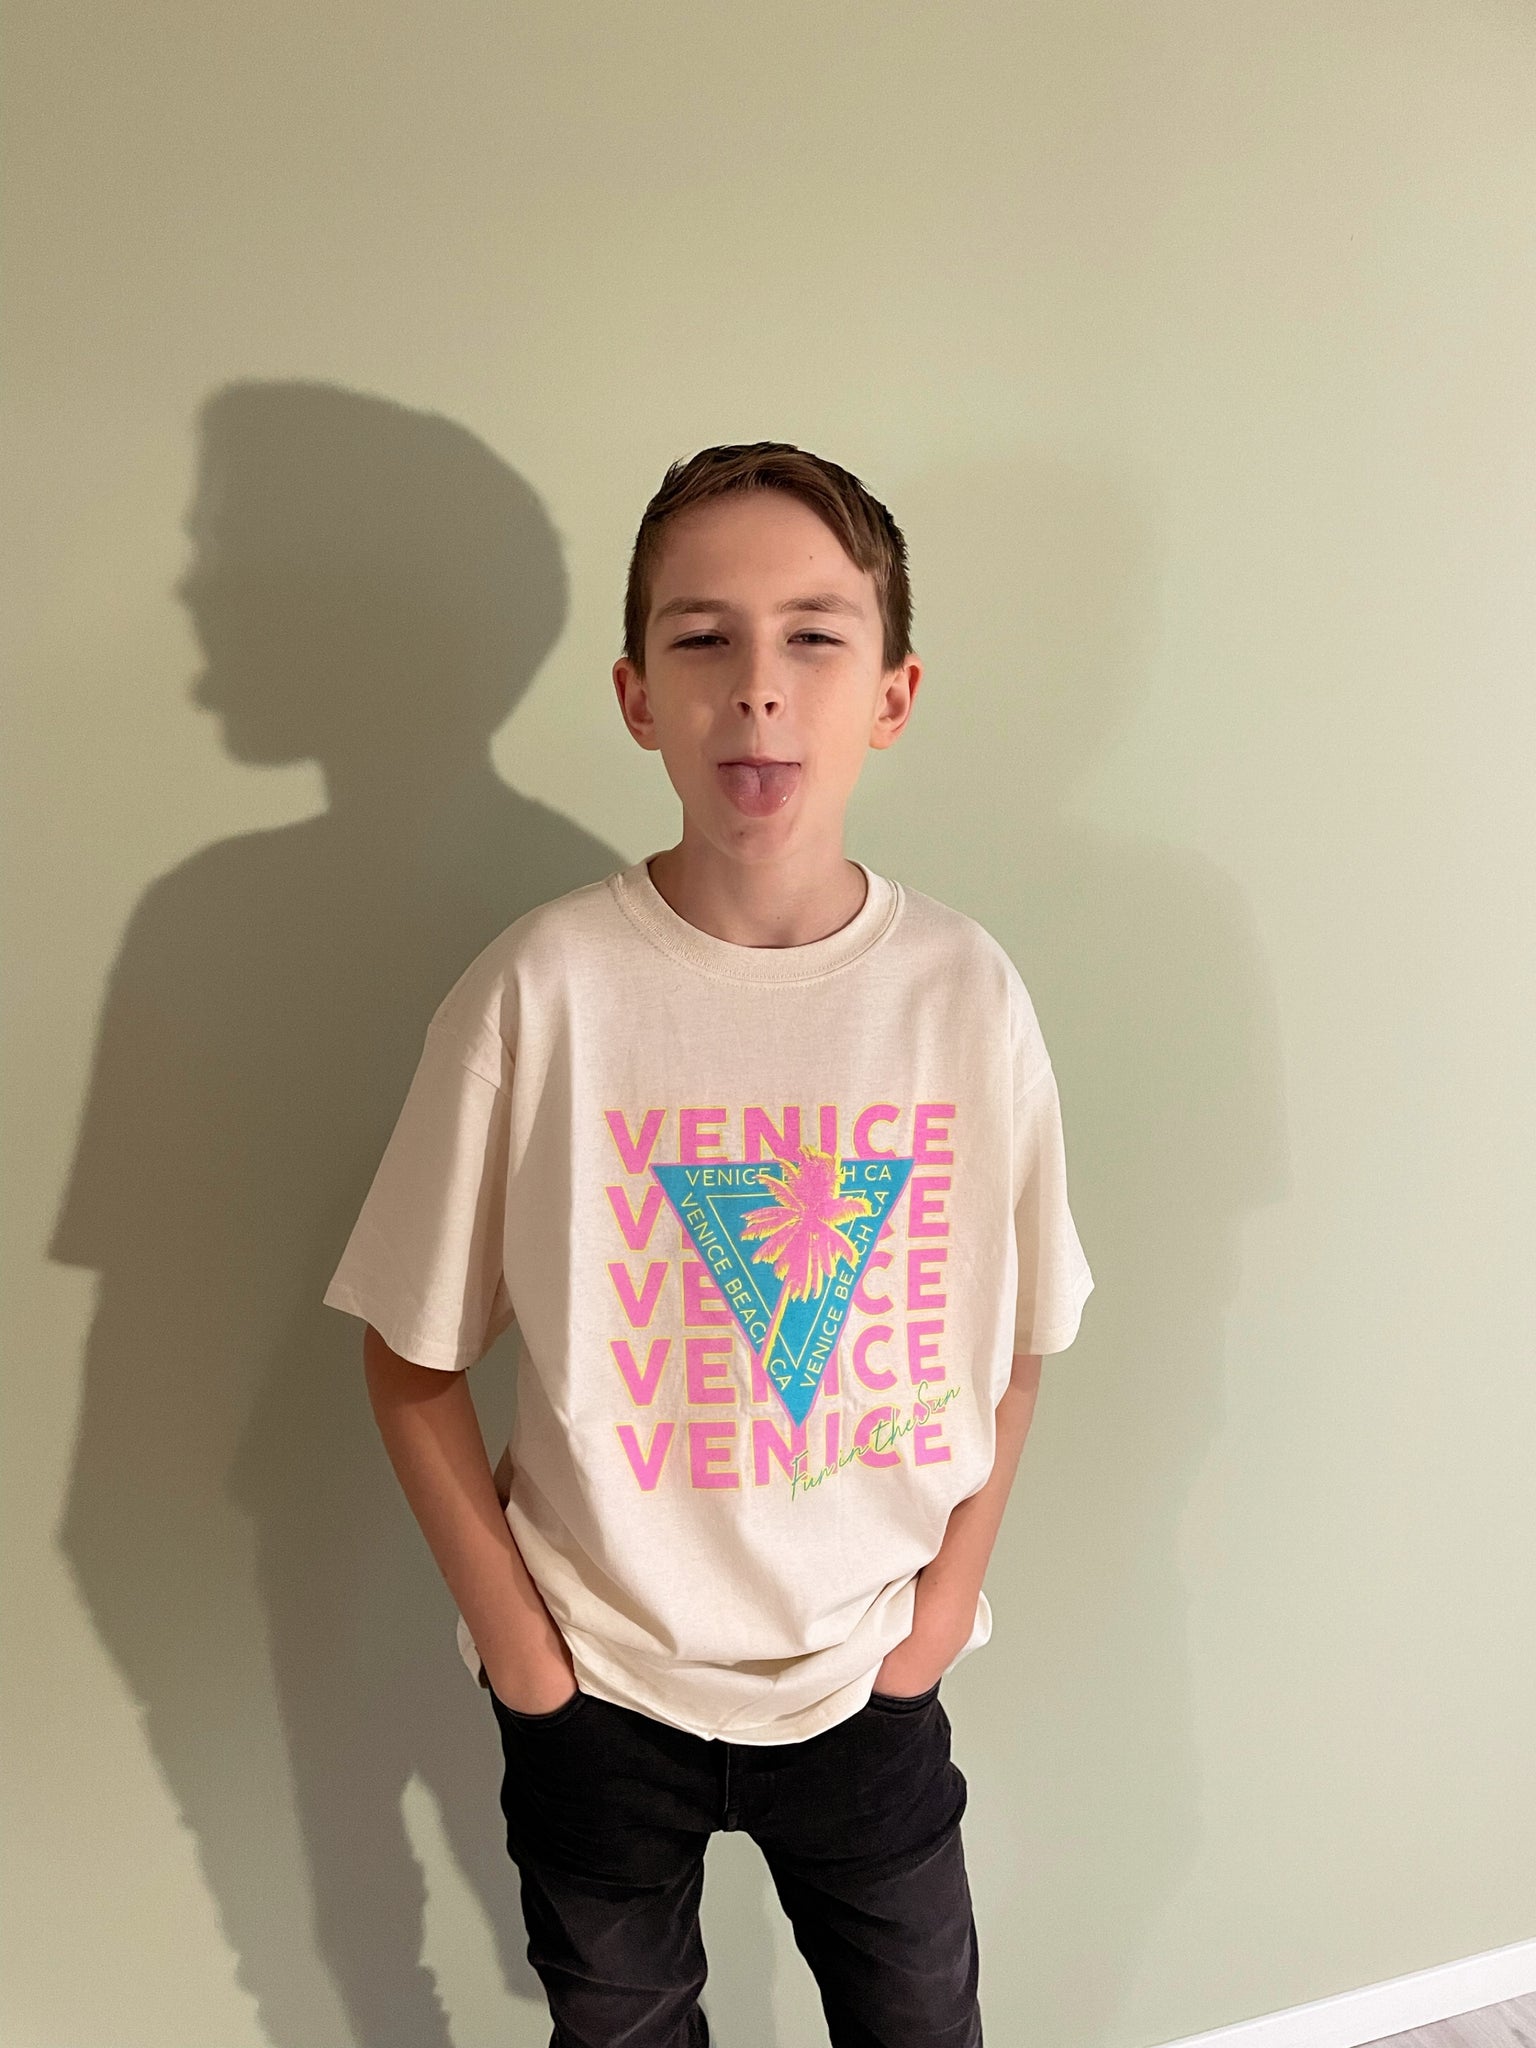 unisex shirt 'venice beach kids'